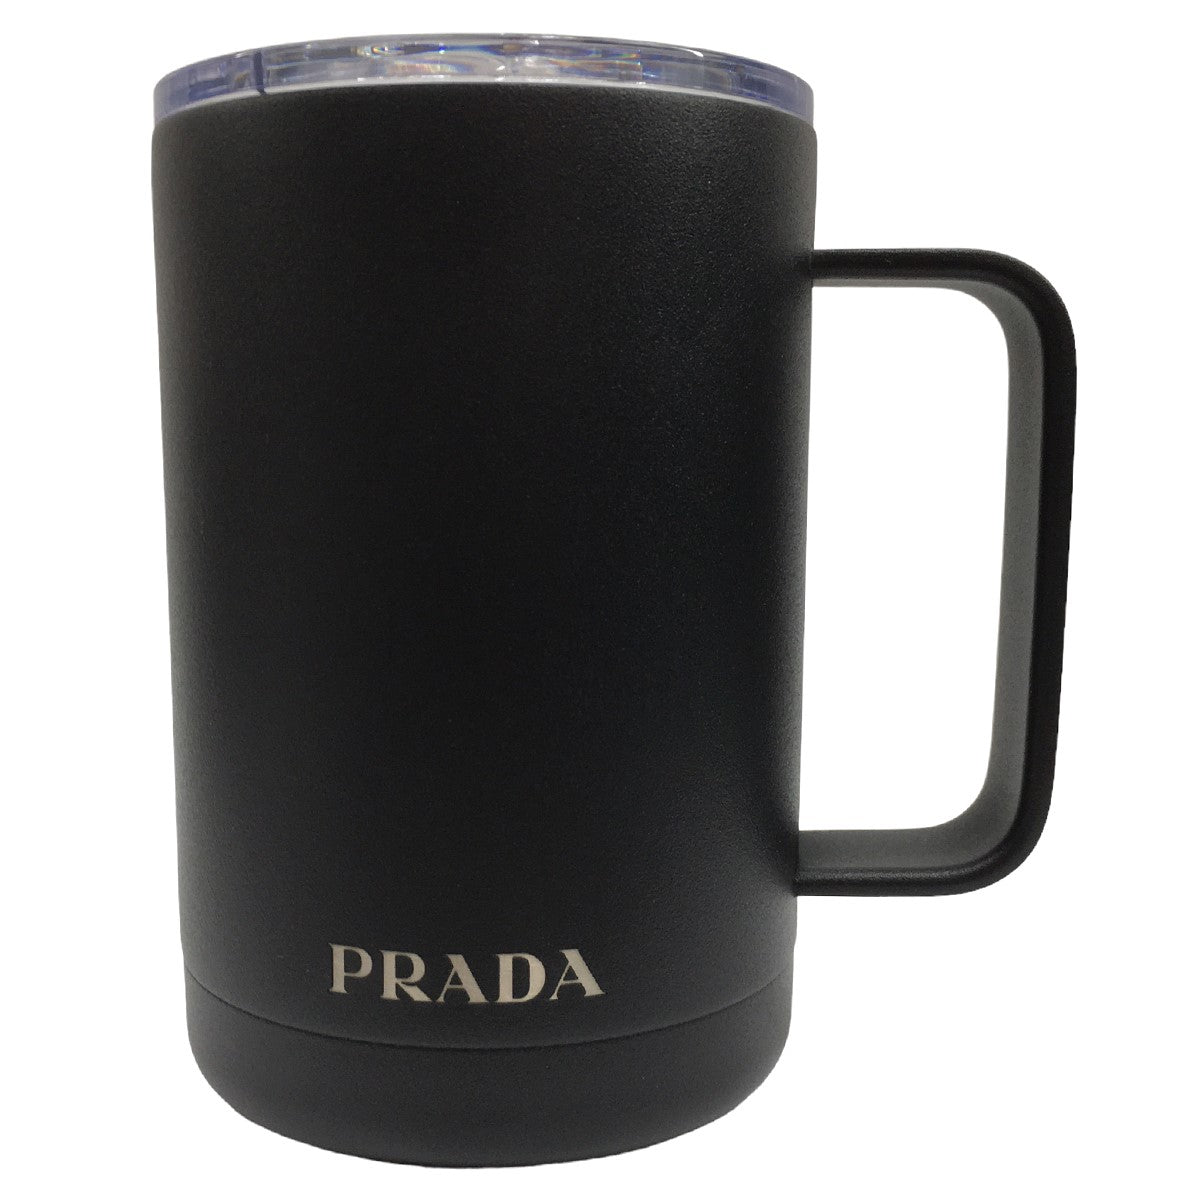 PRADA(プラダ) TRAVEL MUG トラベル マグカップ カップ